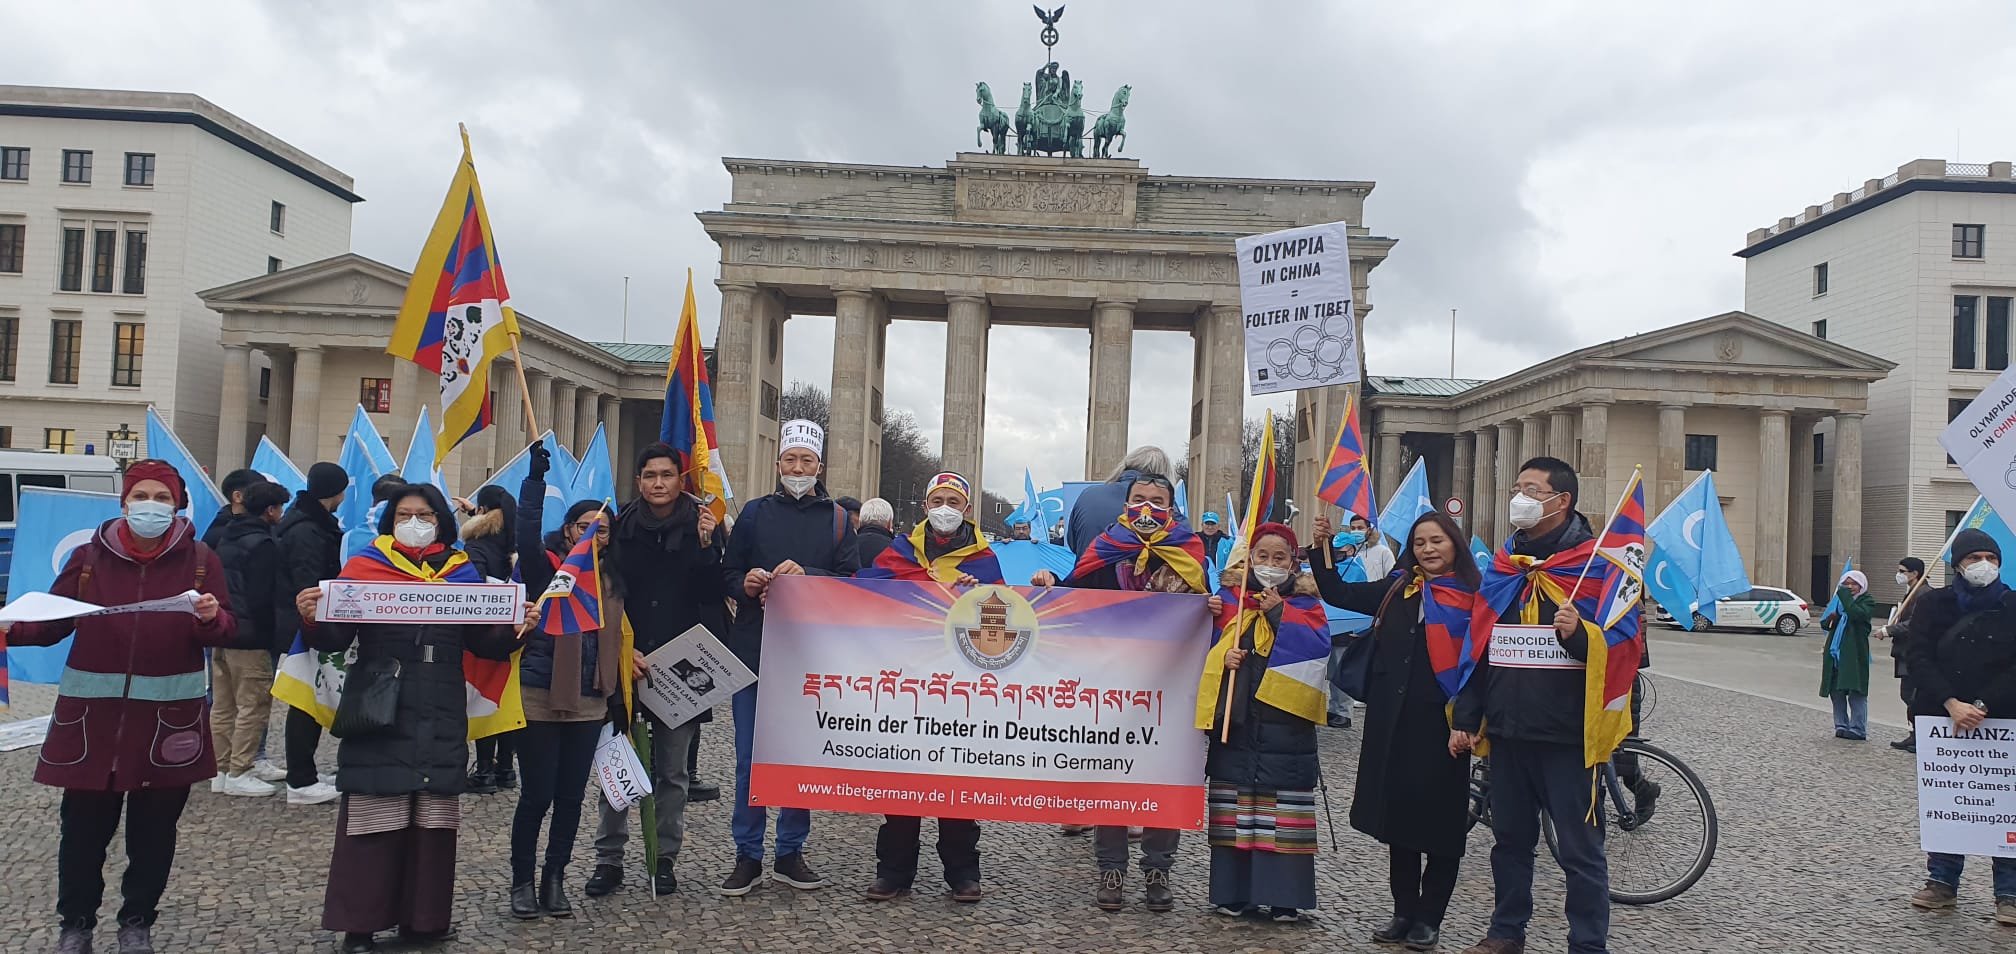 La Asociación Tibetana en Alemania junto con grupos del Tíbet llamaron al boicot diplomático de los Juegos Olímpicos de Beijing 2022 2 comunidades tibetanas en Suiza y Alemania llaman al boicot diplomático de los Juegos Olímpicos de Beijing 2022